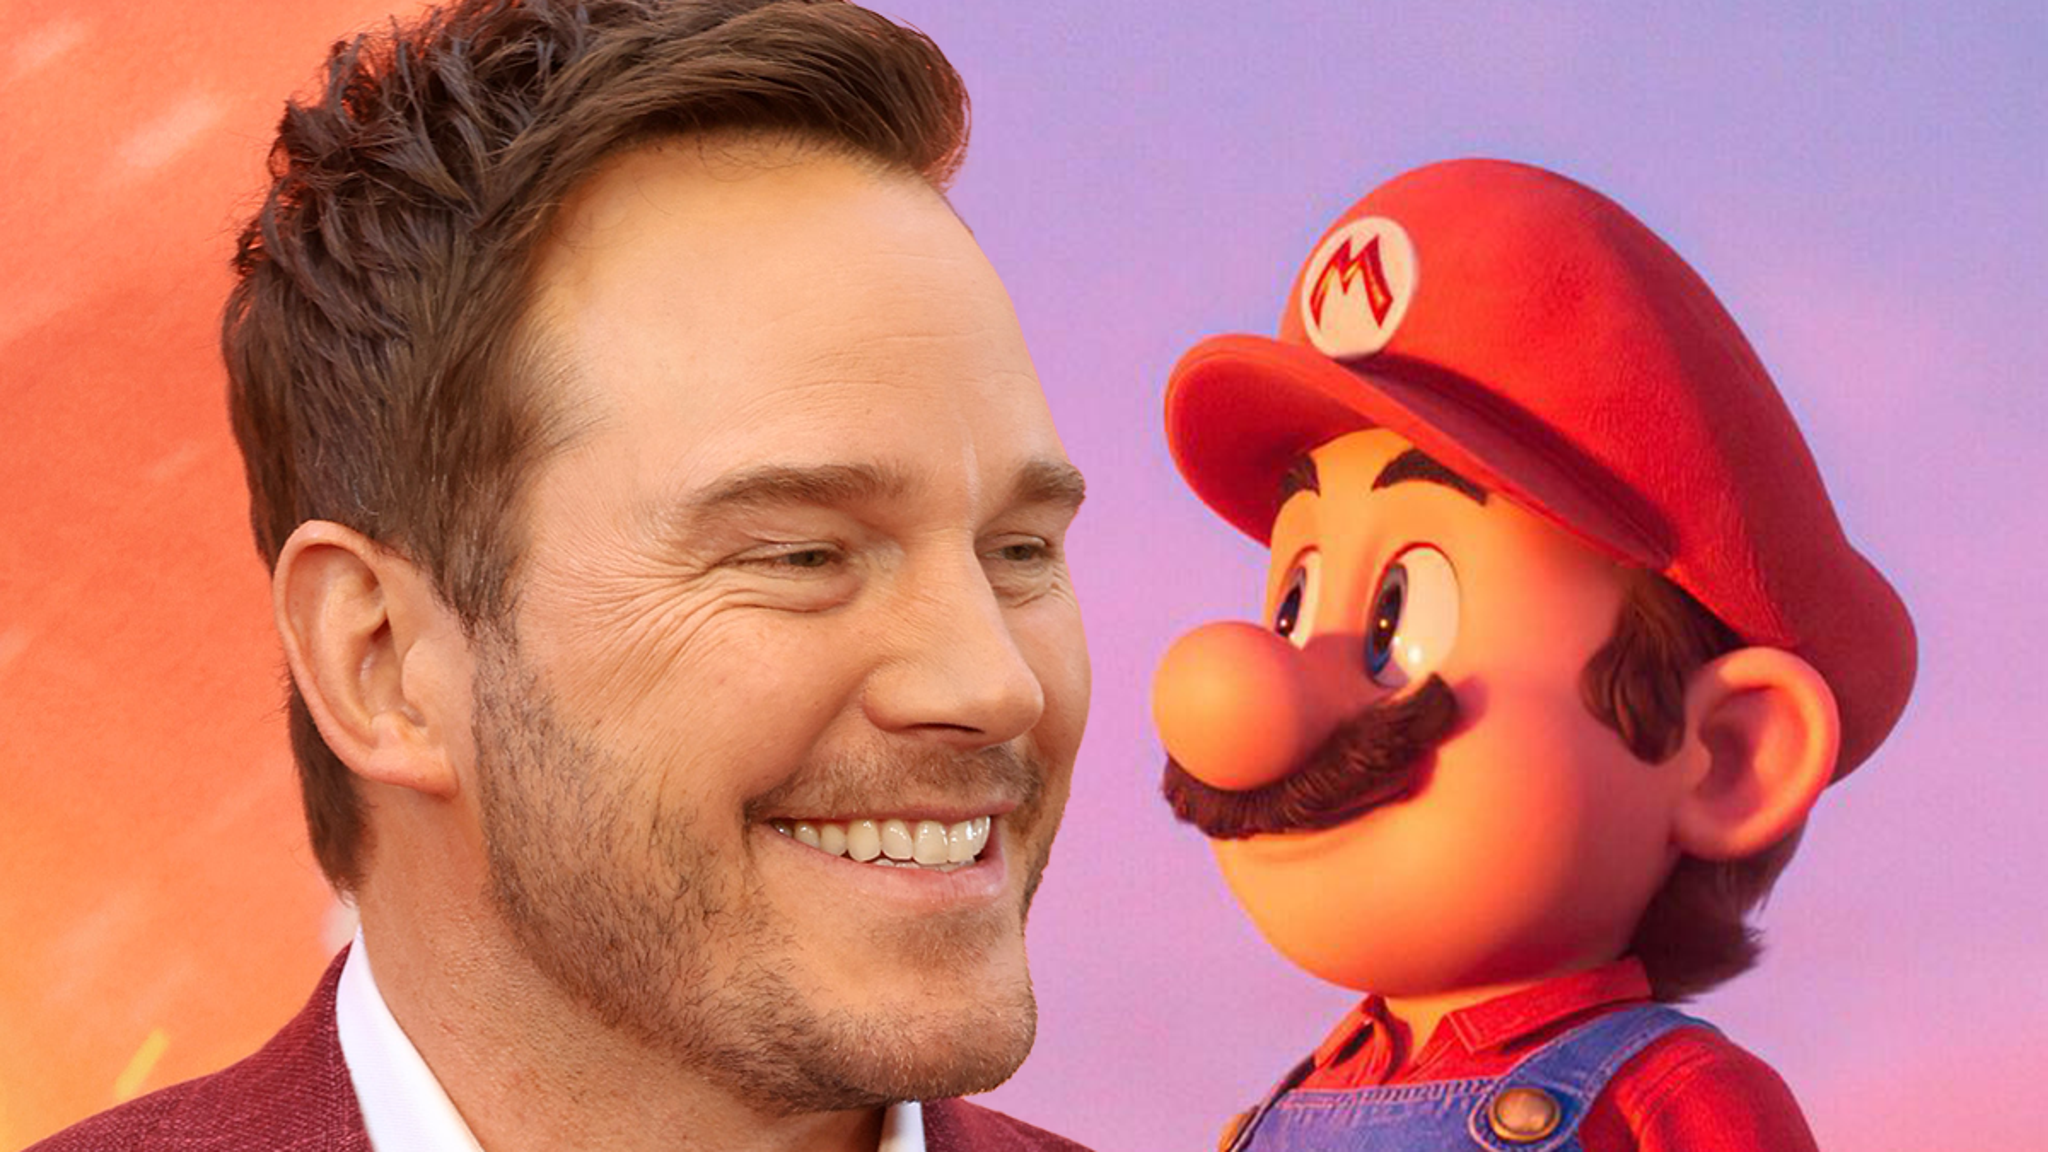 La voix de Chris Pratt en tant que Mario dans le nouveau film n'est pas terrible, Internet décide